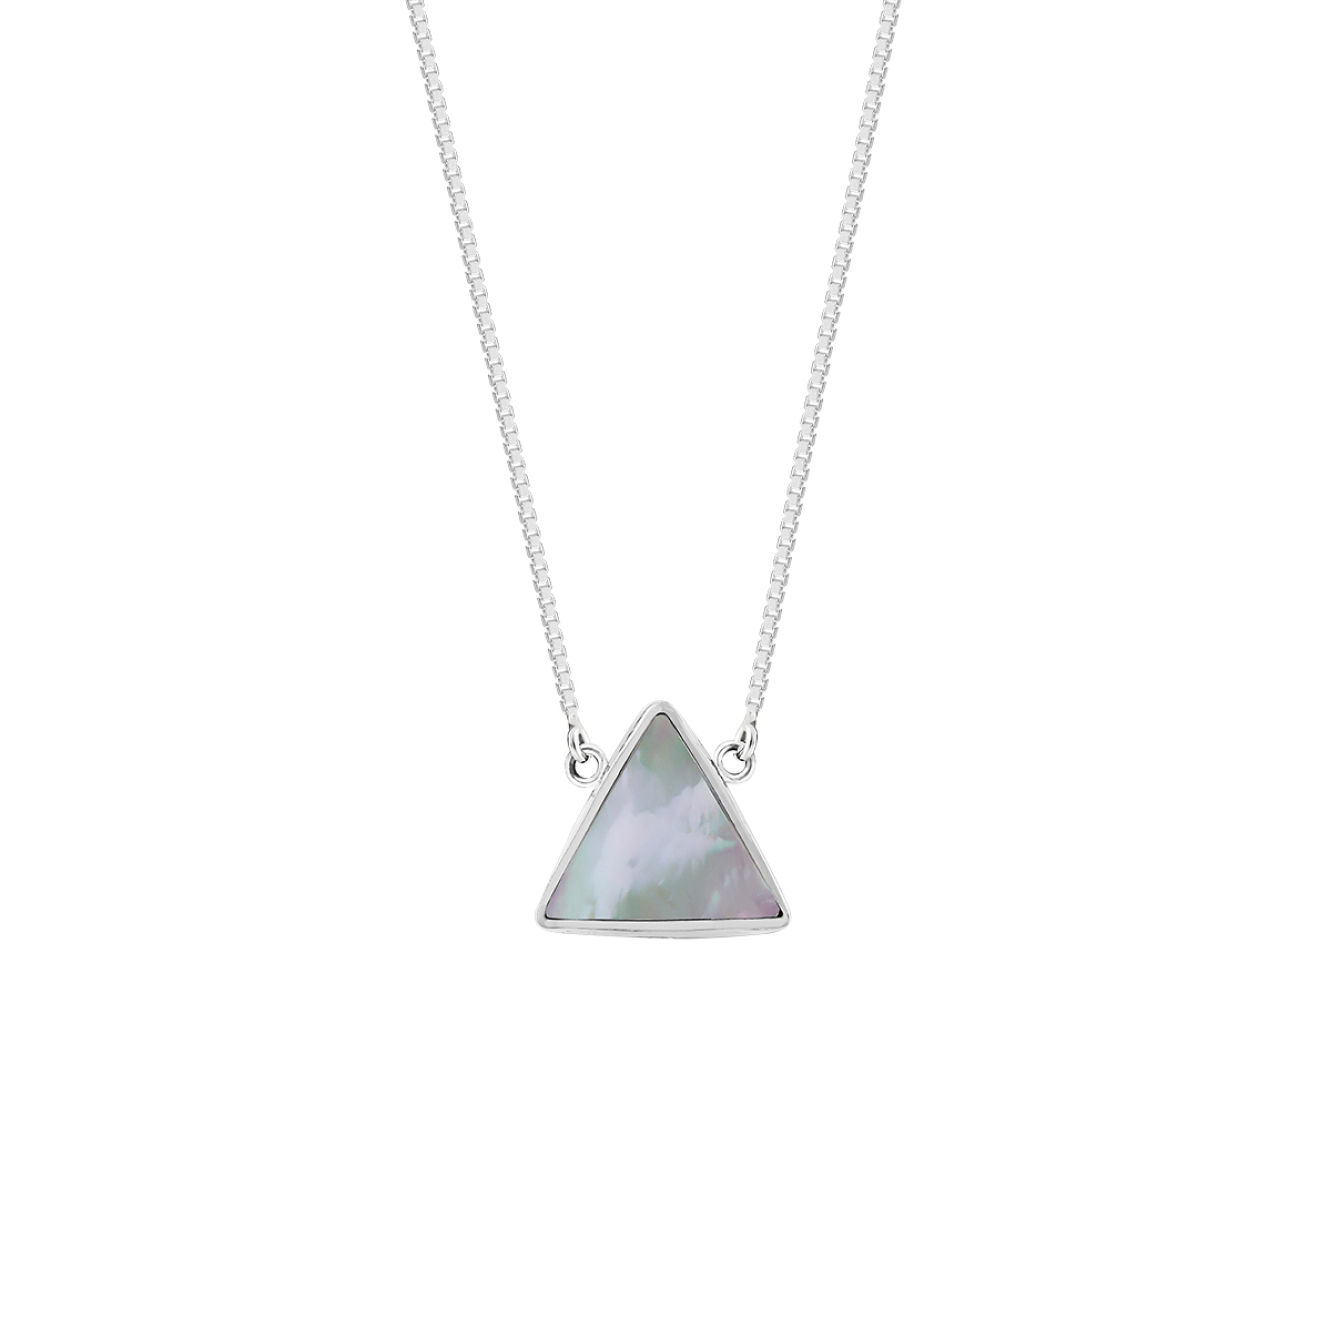 Wishes Come True Колье-треугольник из серебра со светлым плоским перламутром